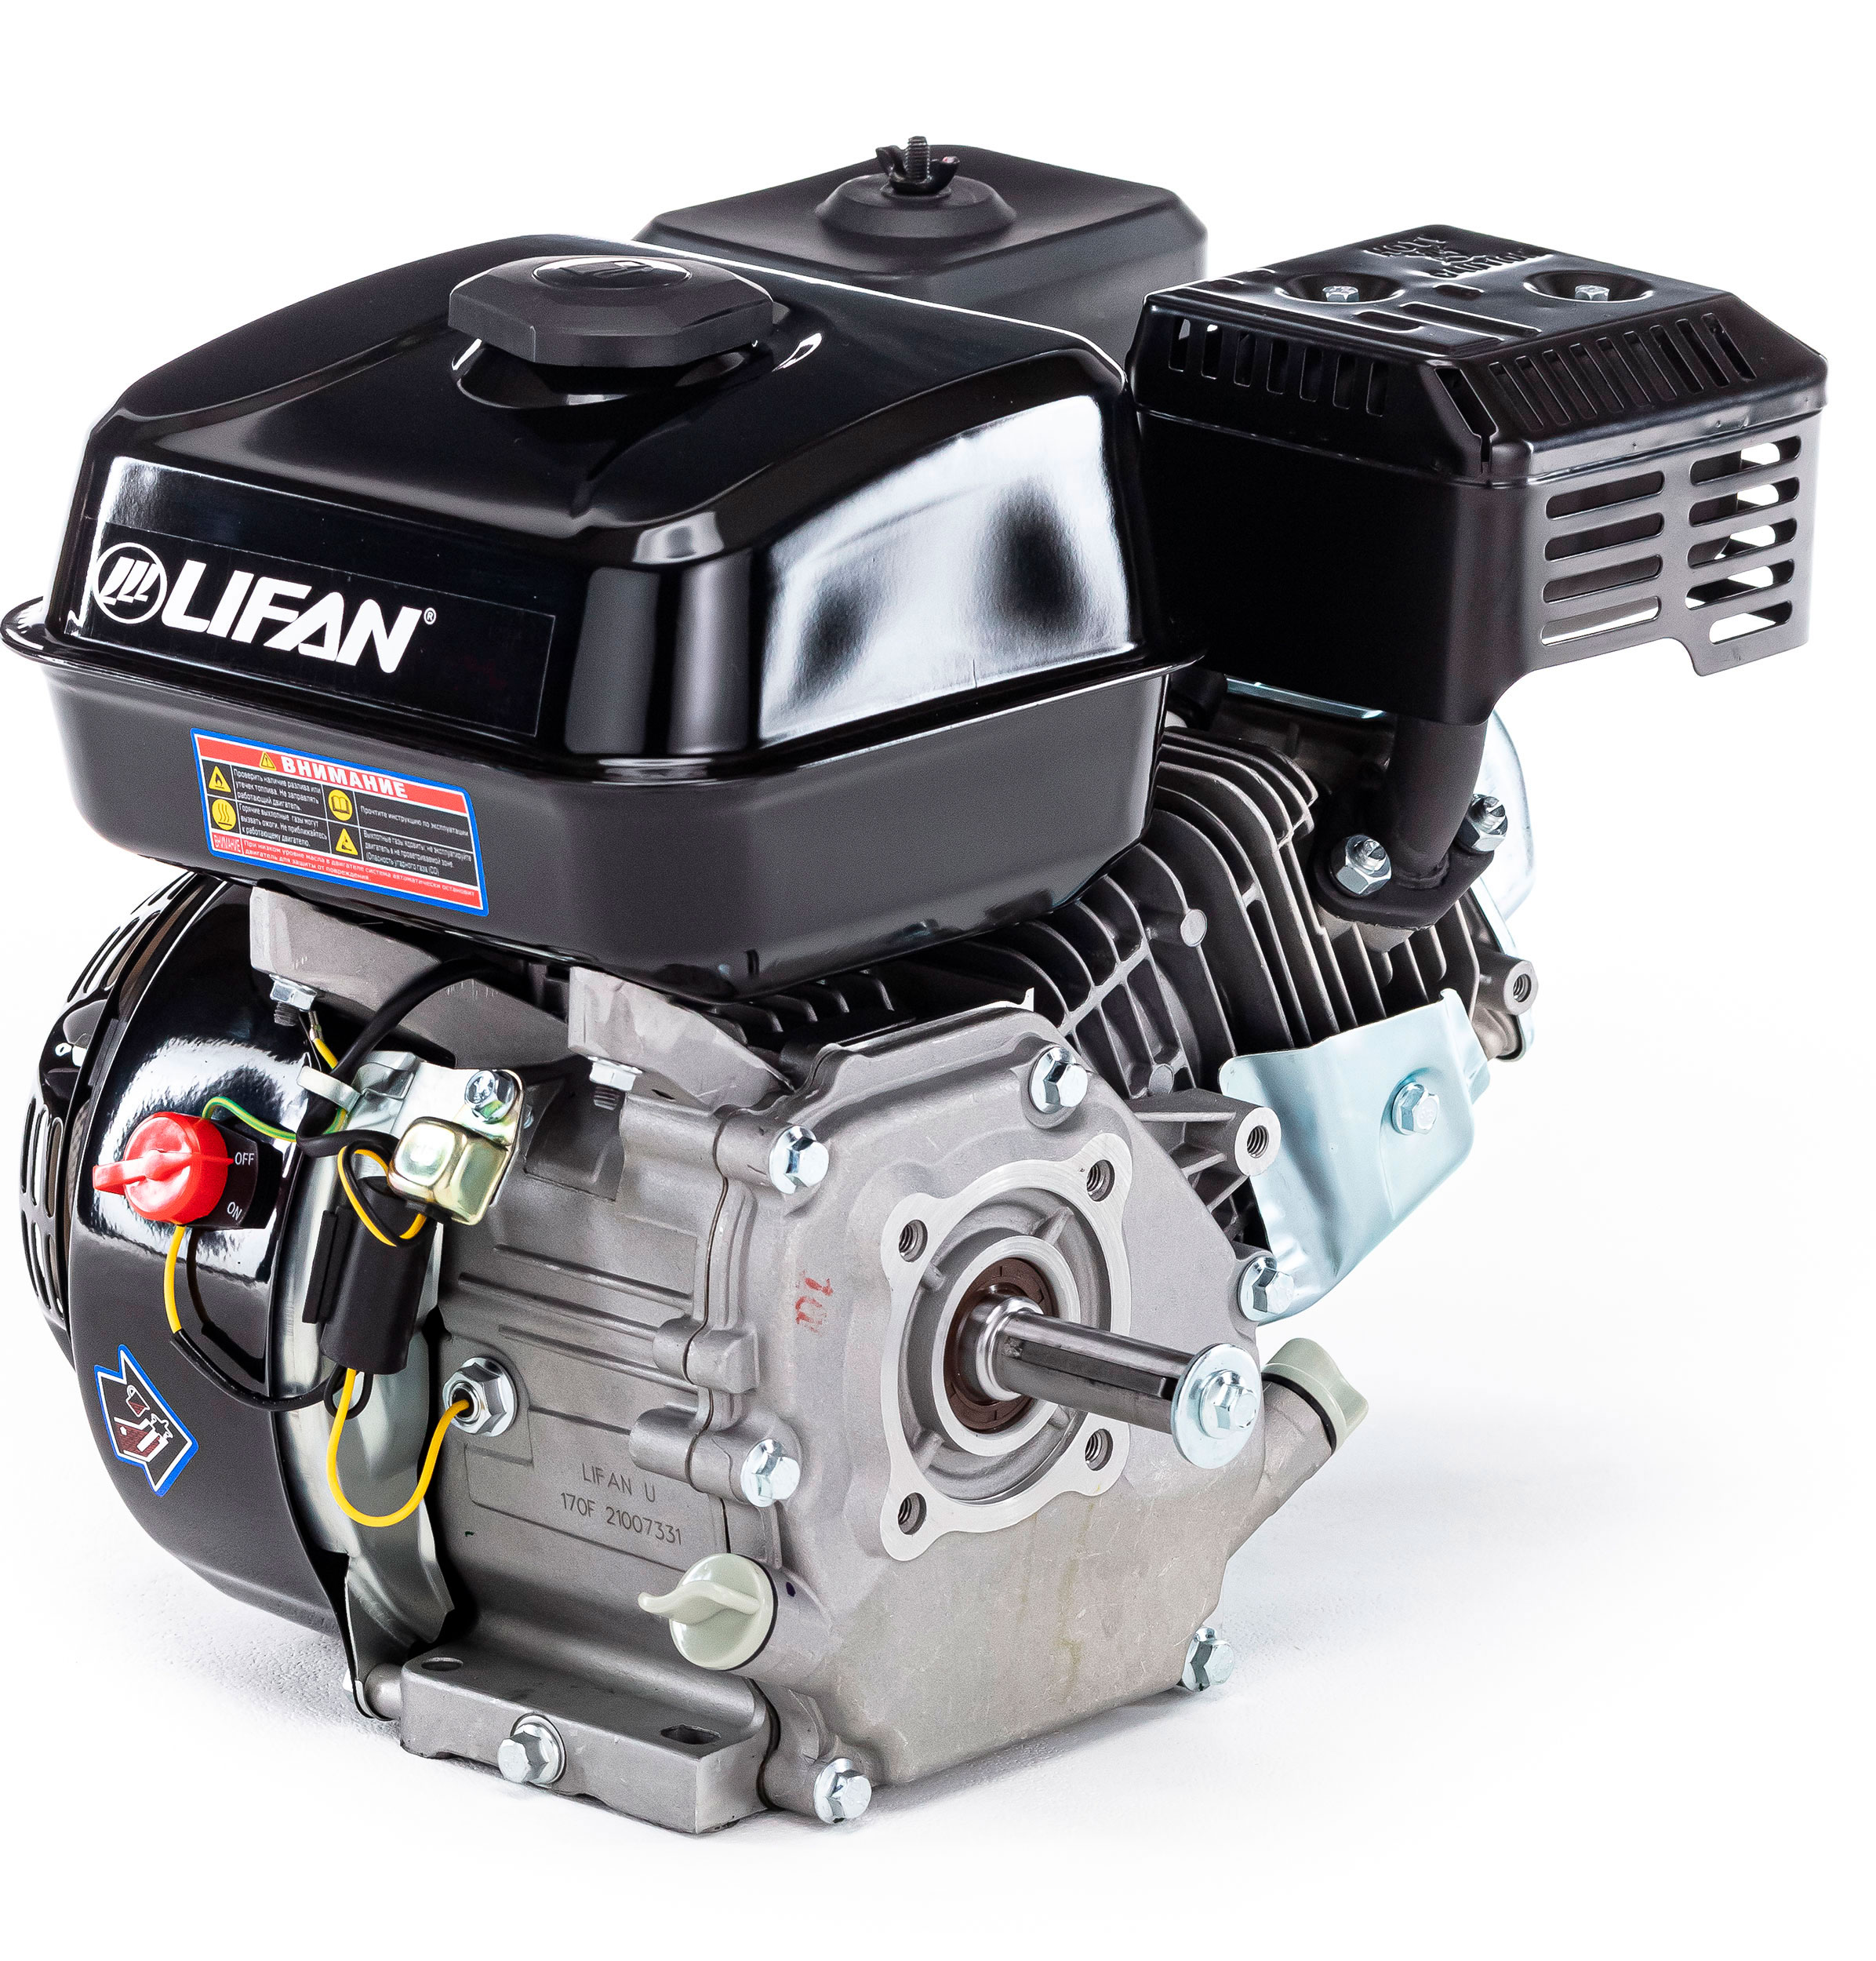 Двигатель LIFAN 170FM (7,0 л.с, d вала 19мм)